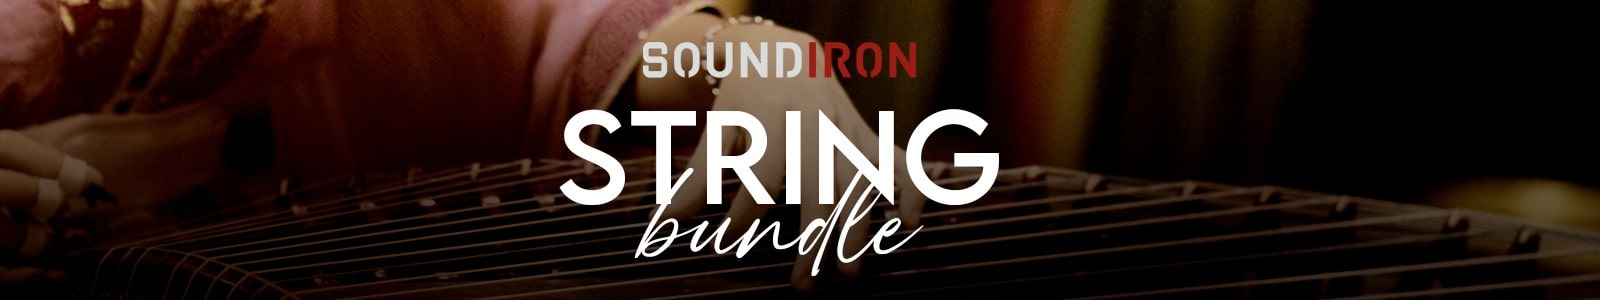 soundiron string bundle